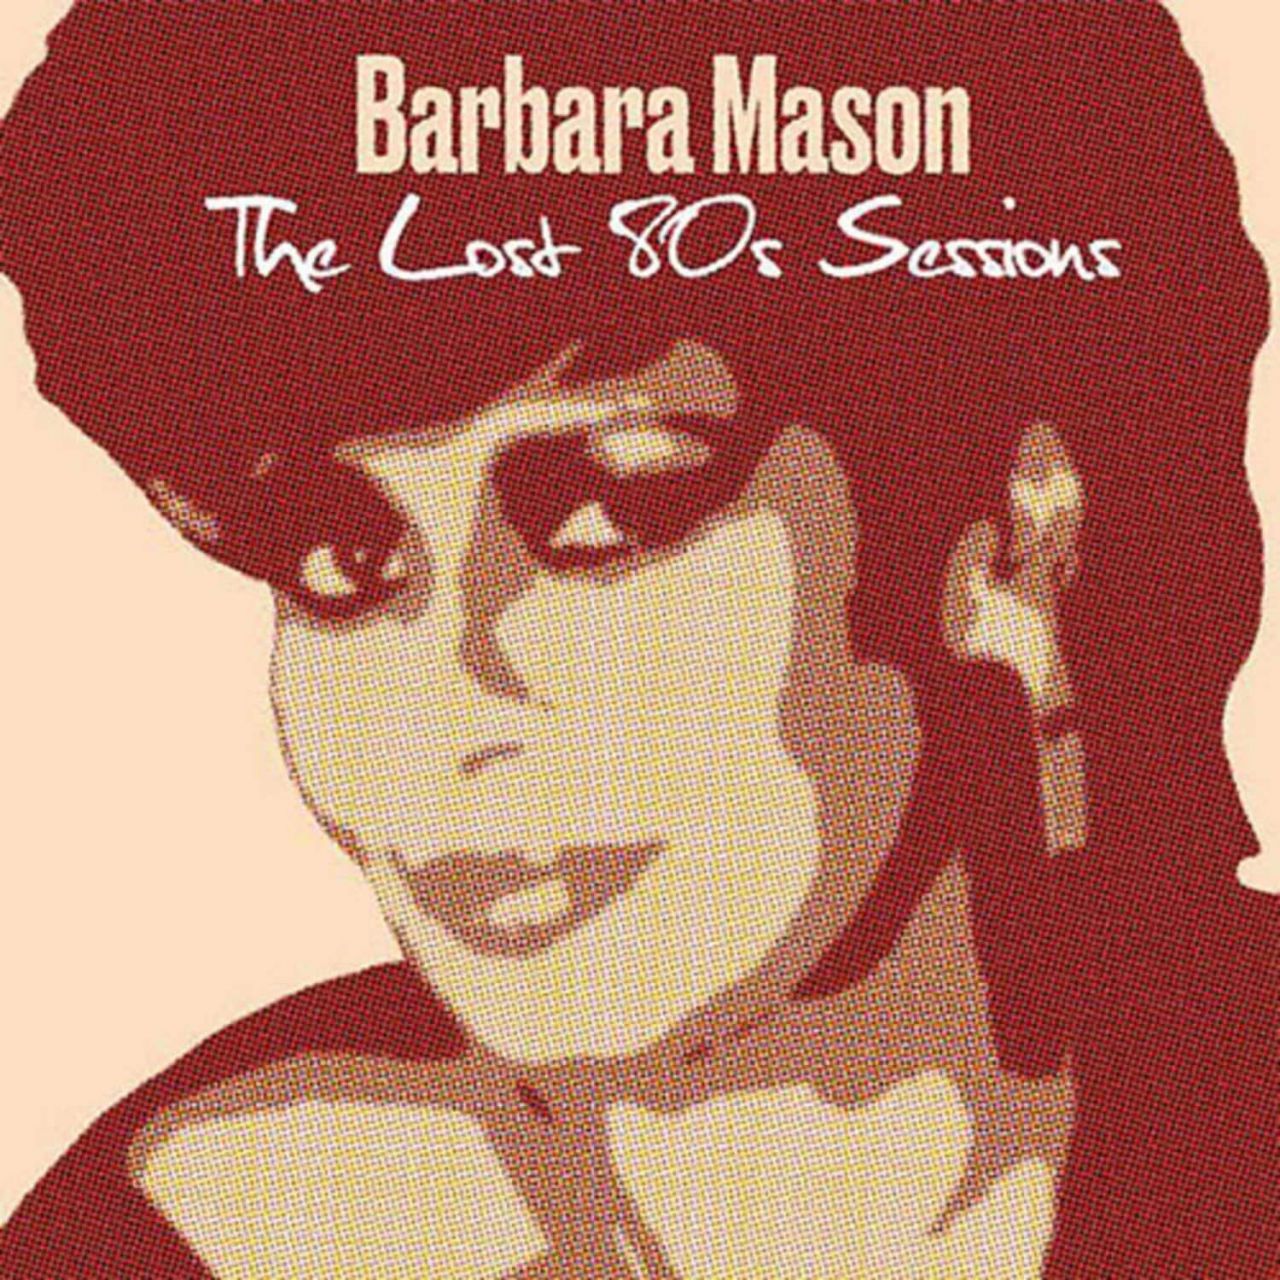 Barbara Mason - The Lost 80s Sessions - LP